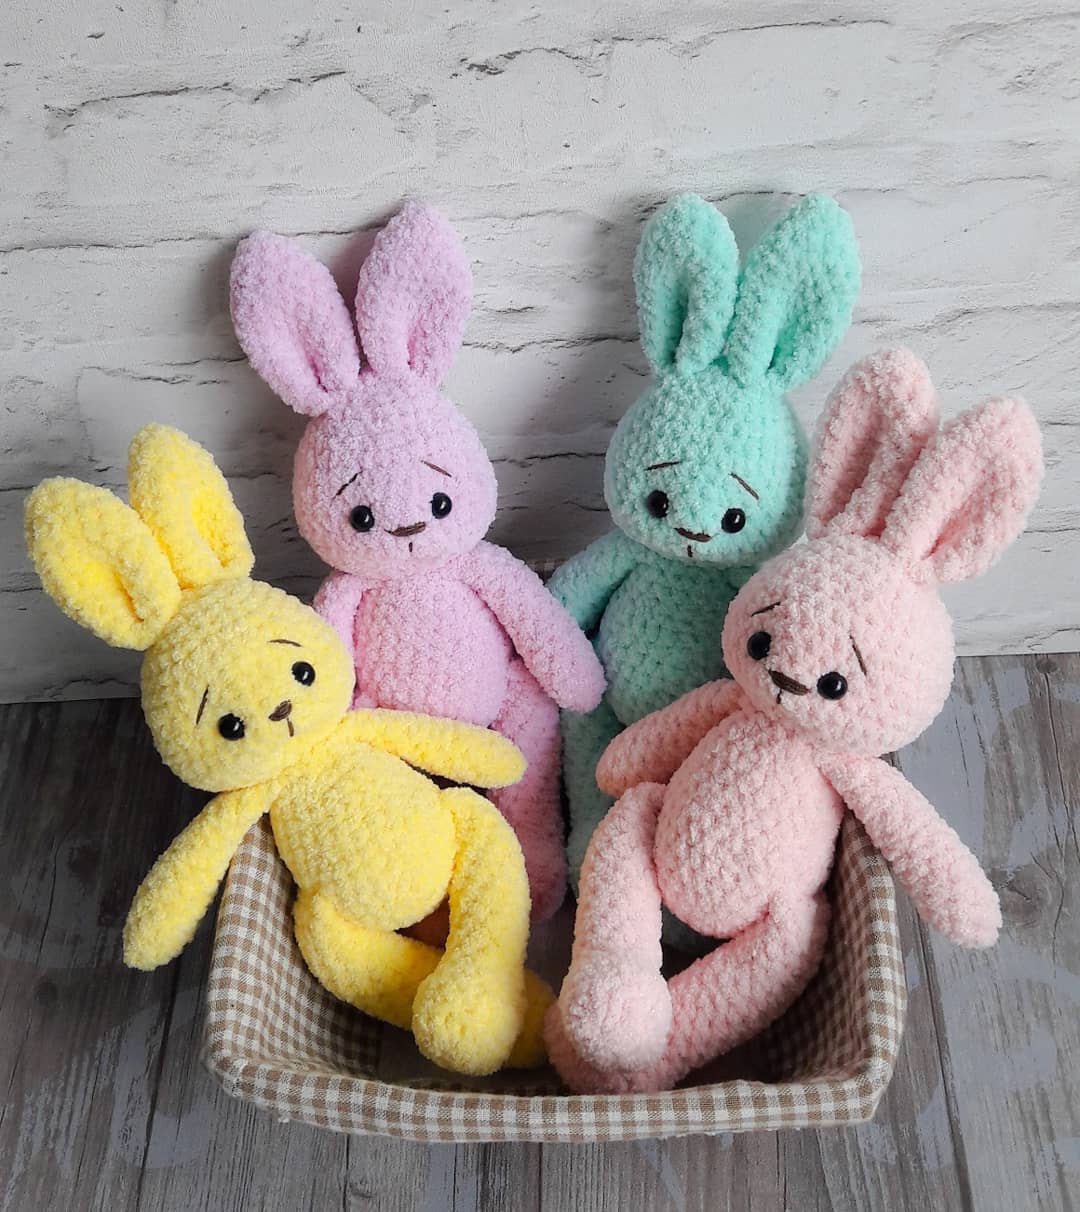 Crochet bunny amigurumi plush toy